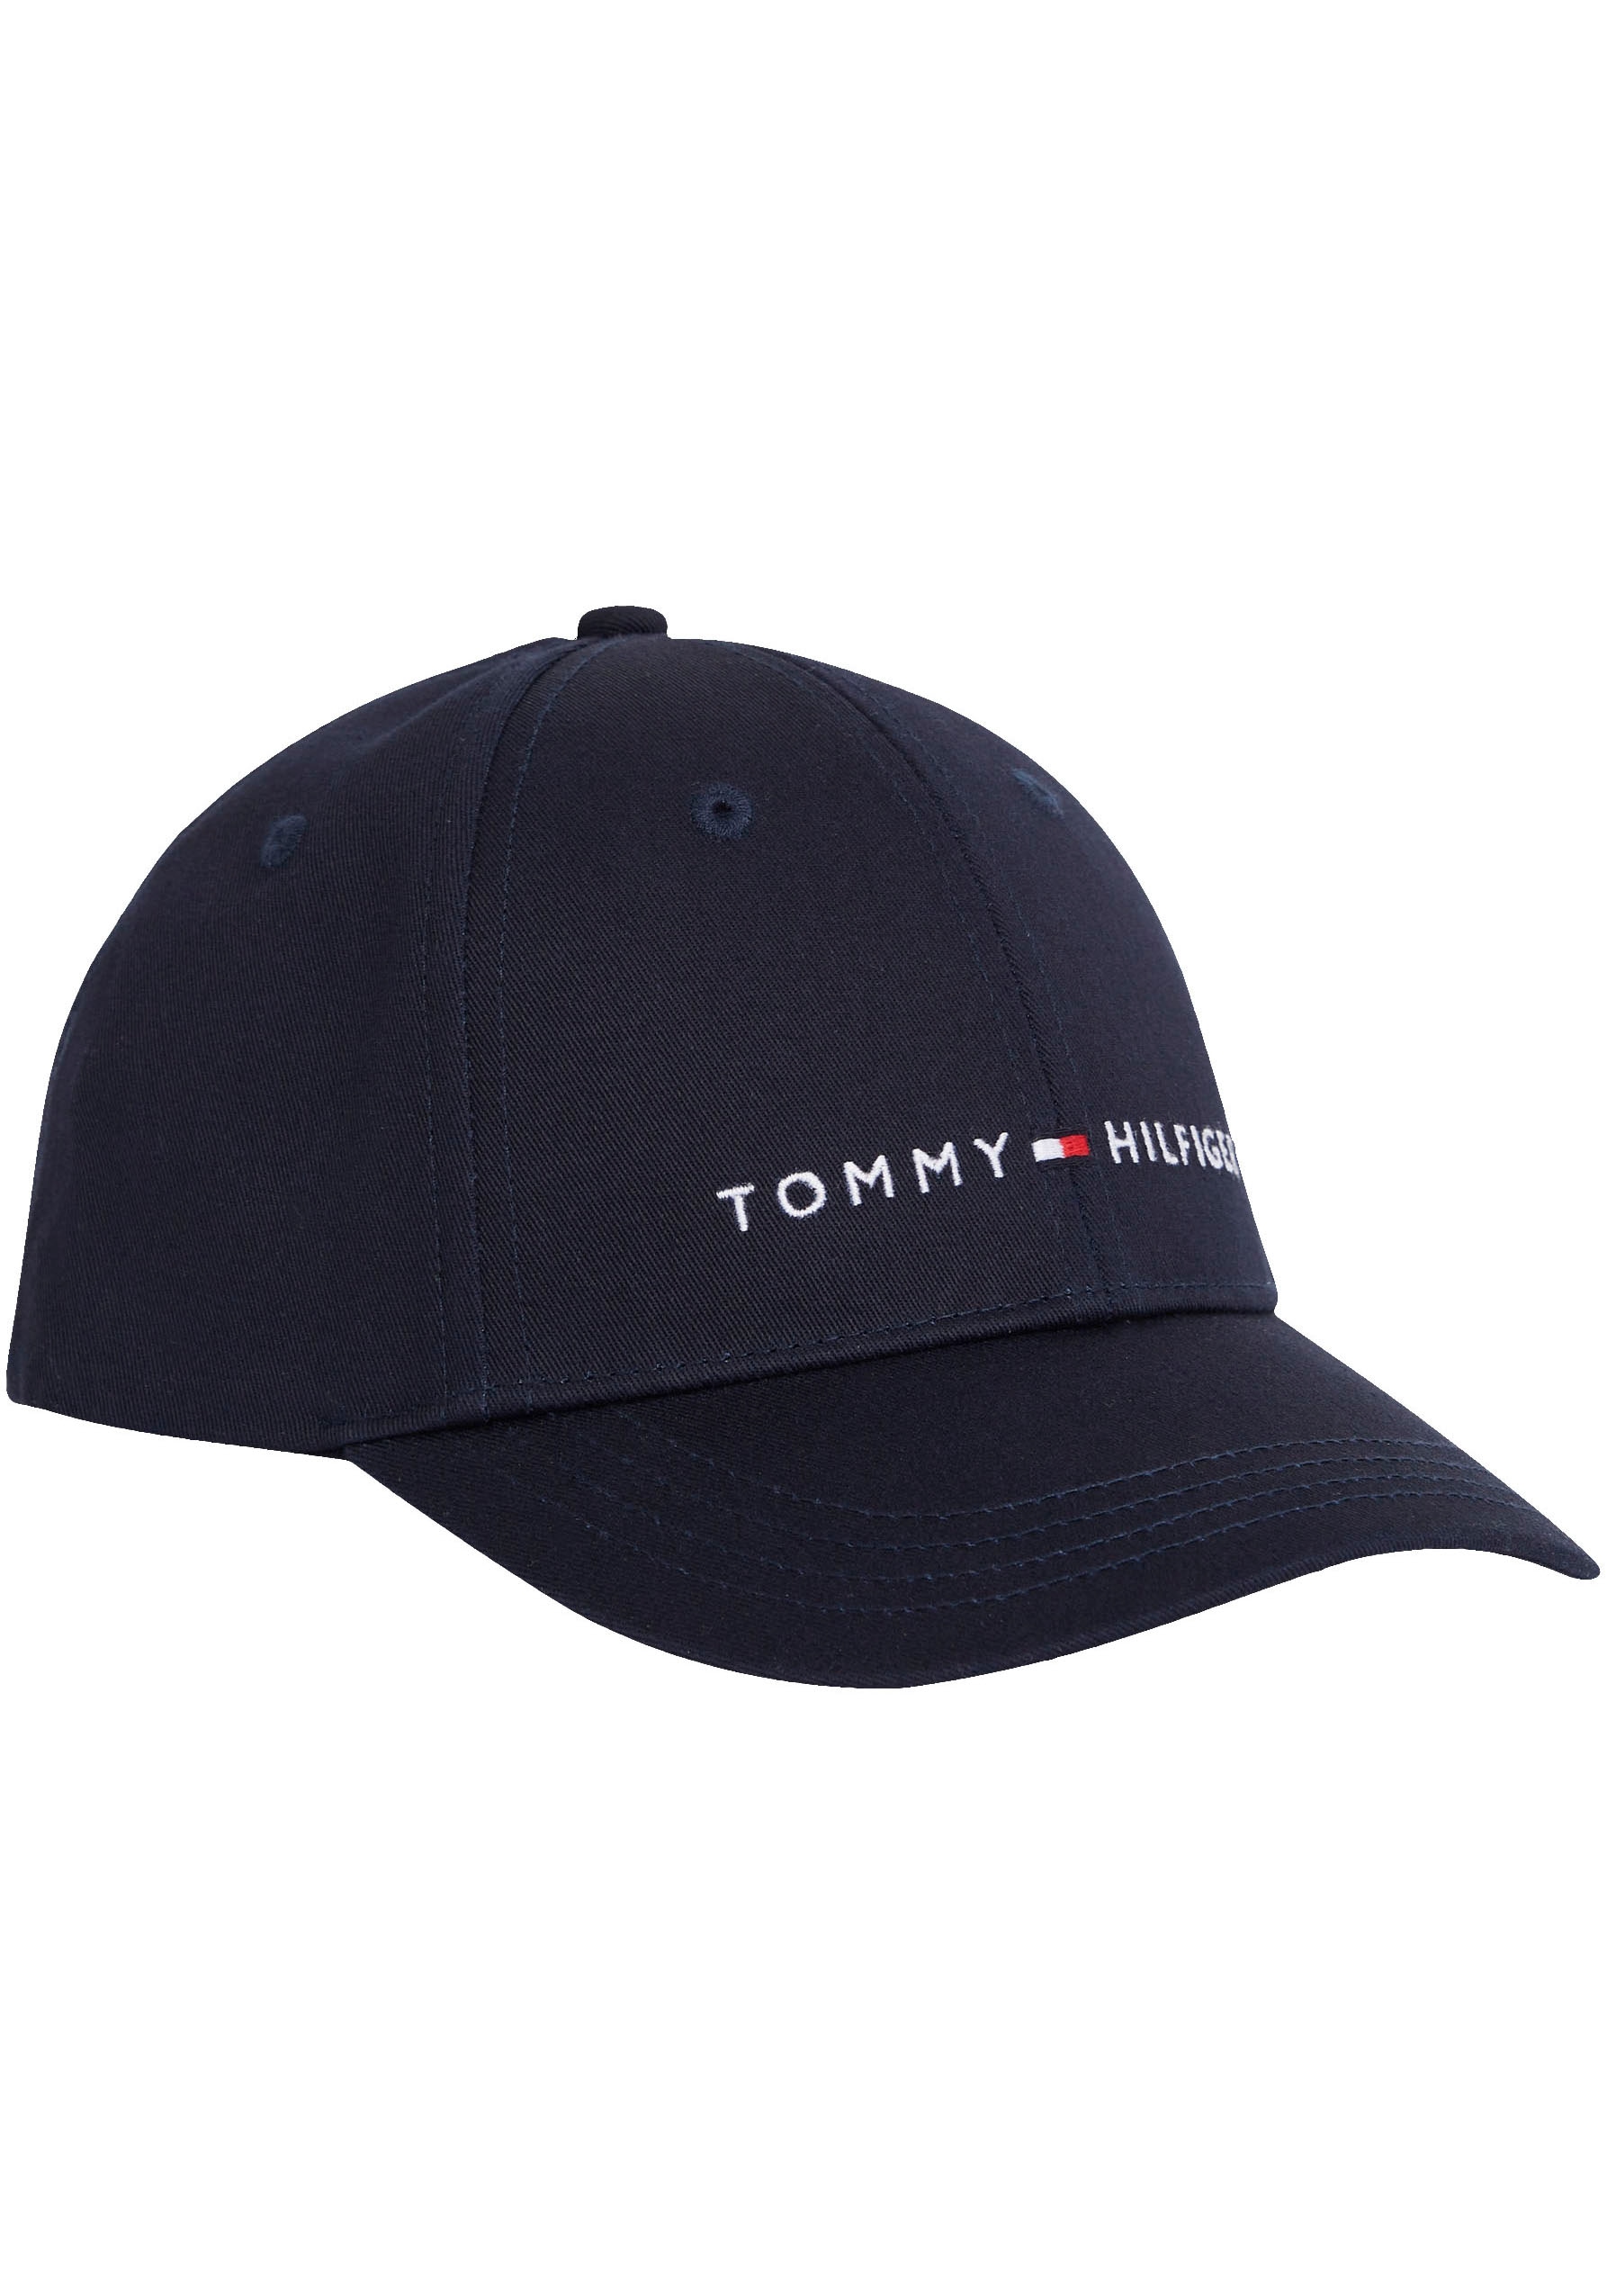 Tommy Hilfiger Snapback Cap, Kinder Essential verstellbare Cap mit Branding  online kaufen | BAUR